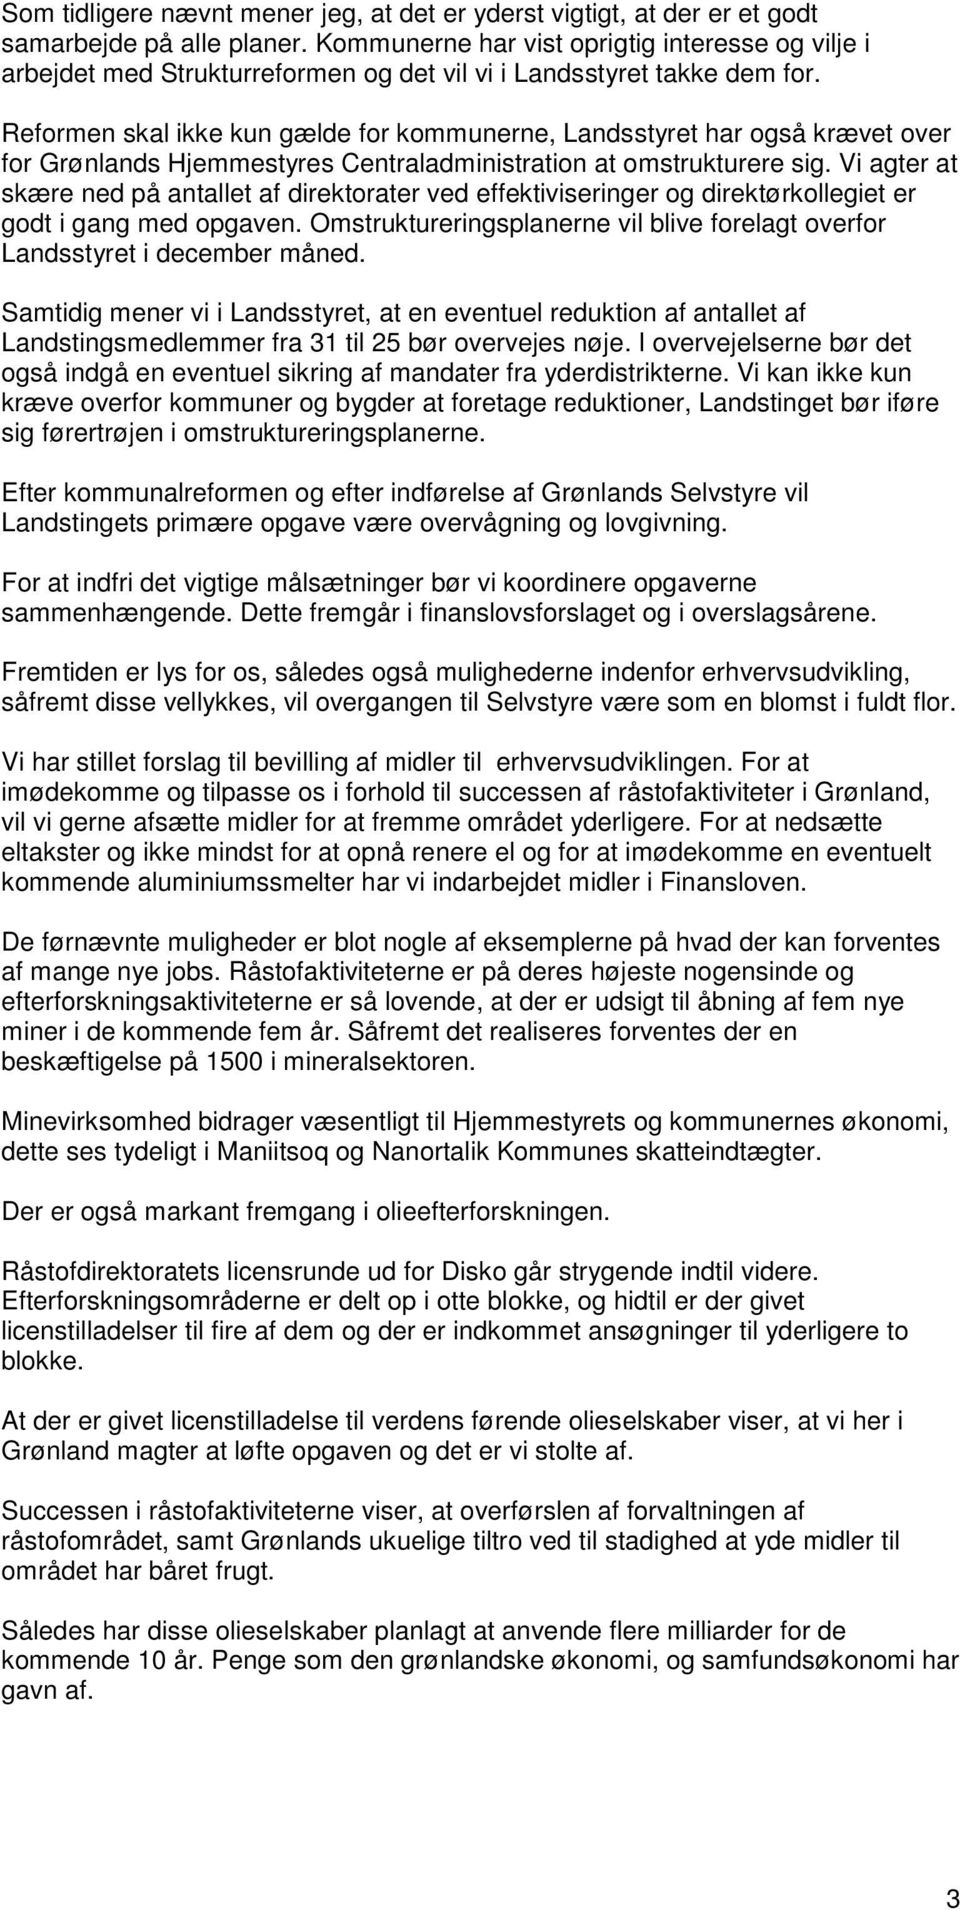 Reformen skal ikke kun gælde for kommunerne, Landsstyret har også krævet over for Grønlands Hjemmestyres Centraladministration at omstrukturere sig.